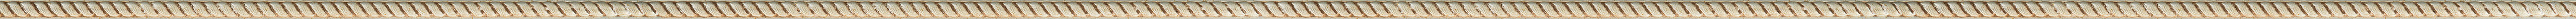 Σκαλιστή λεπτή κορνίζα με φύλλο ασήμι frame